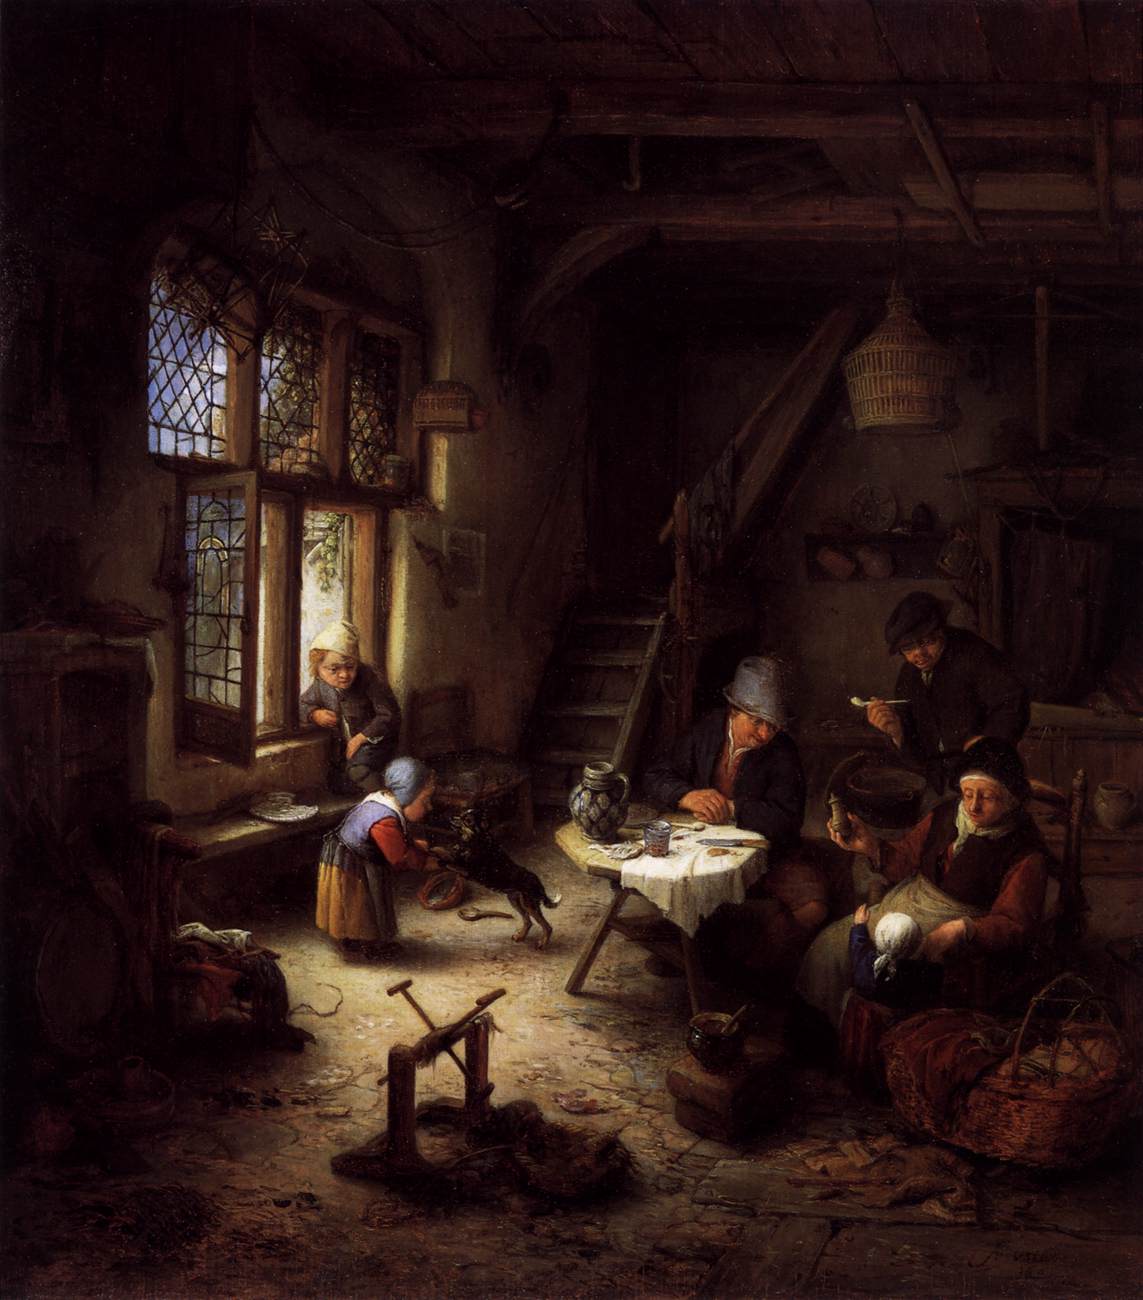 Peasant Family in a Cabin Interior